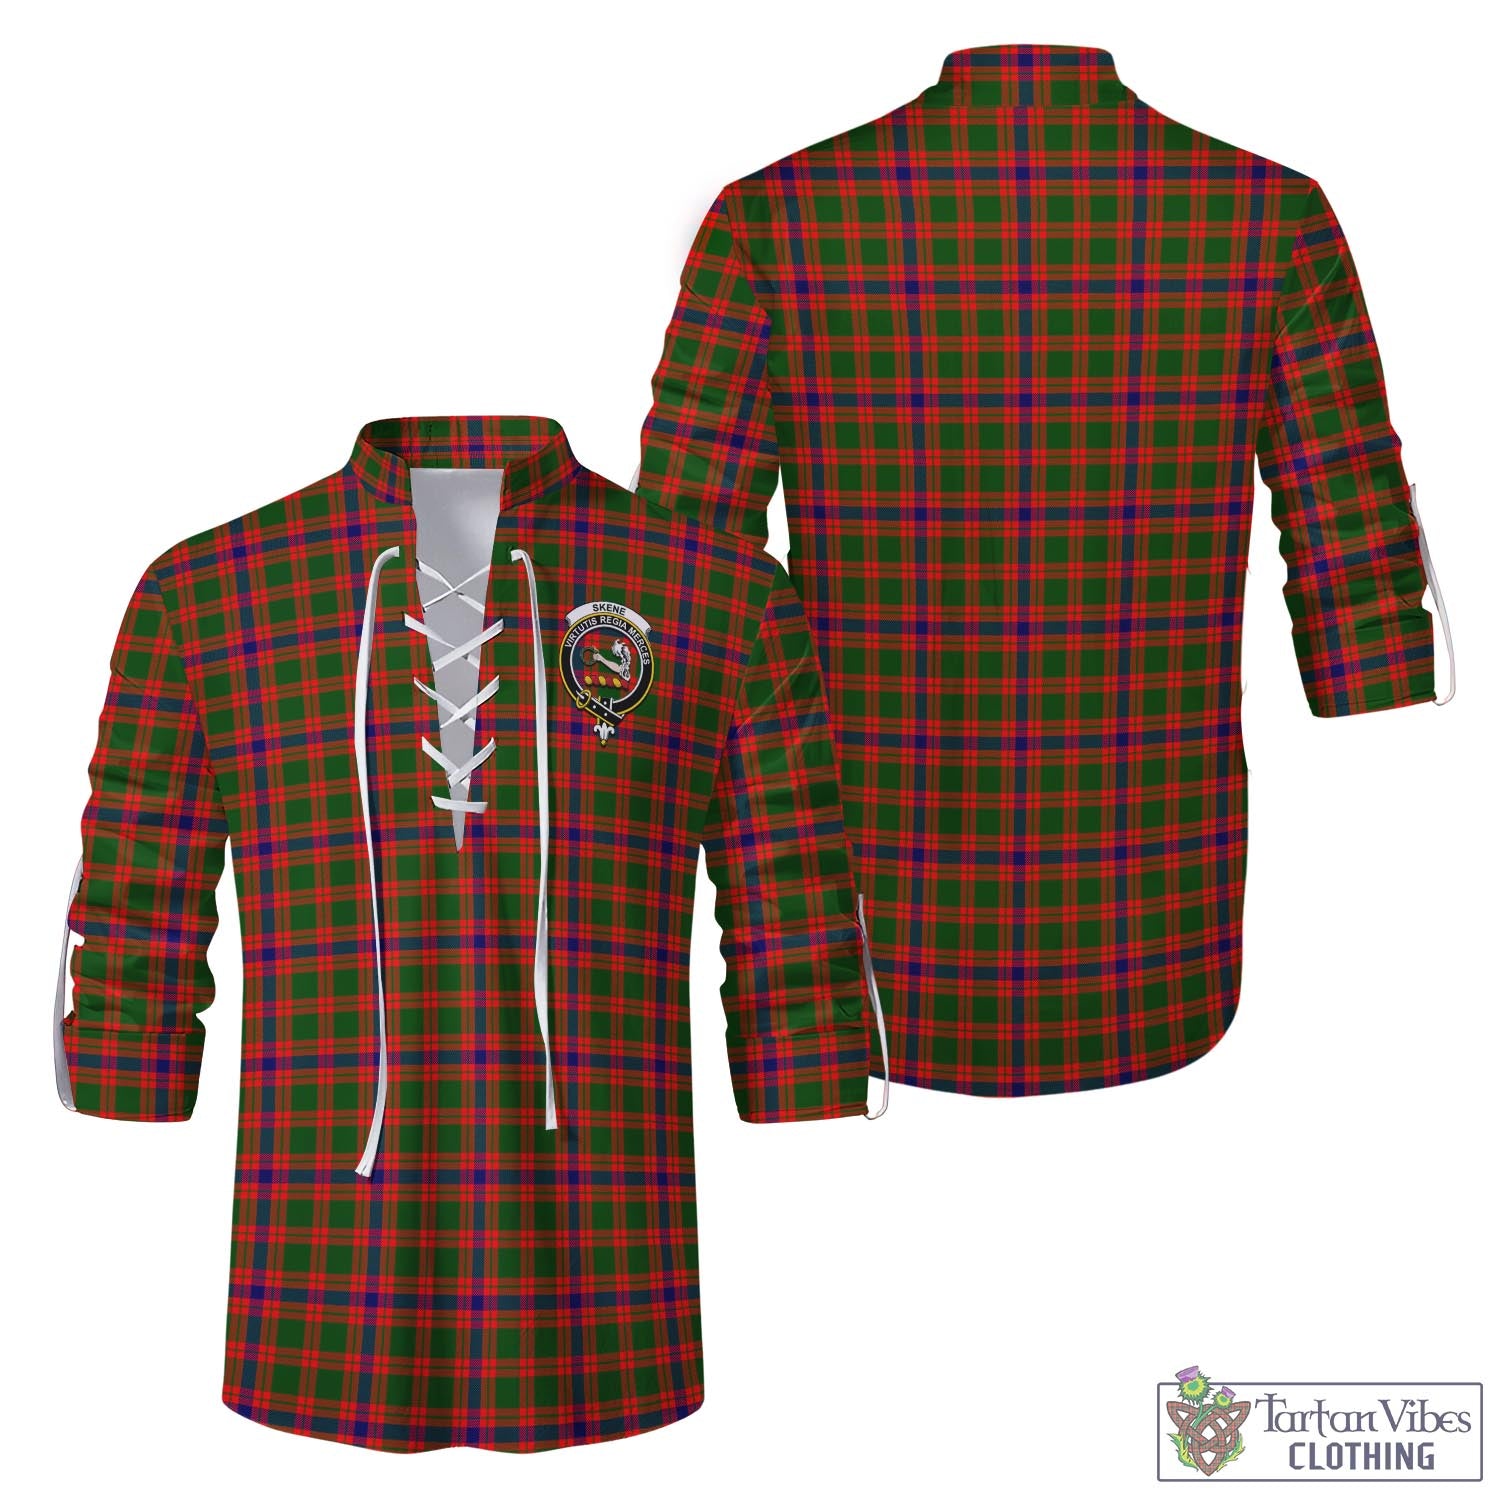 Tartan Vibes Clothing Skene Modern Tartan Men's Scottish Traditional Jacobite Ghillie Kilt Shirt with Family Crest